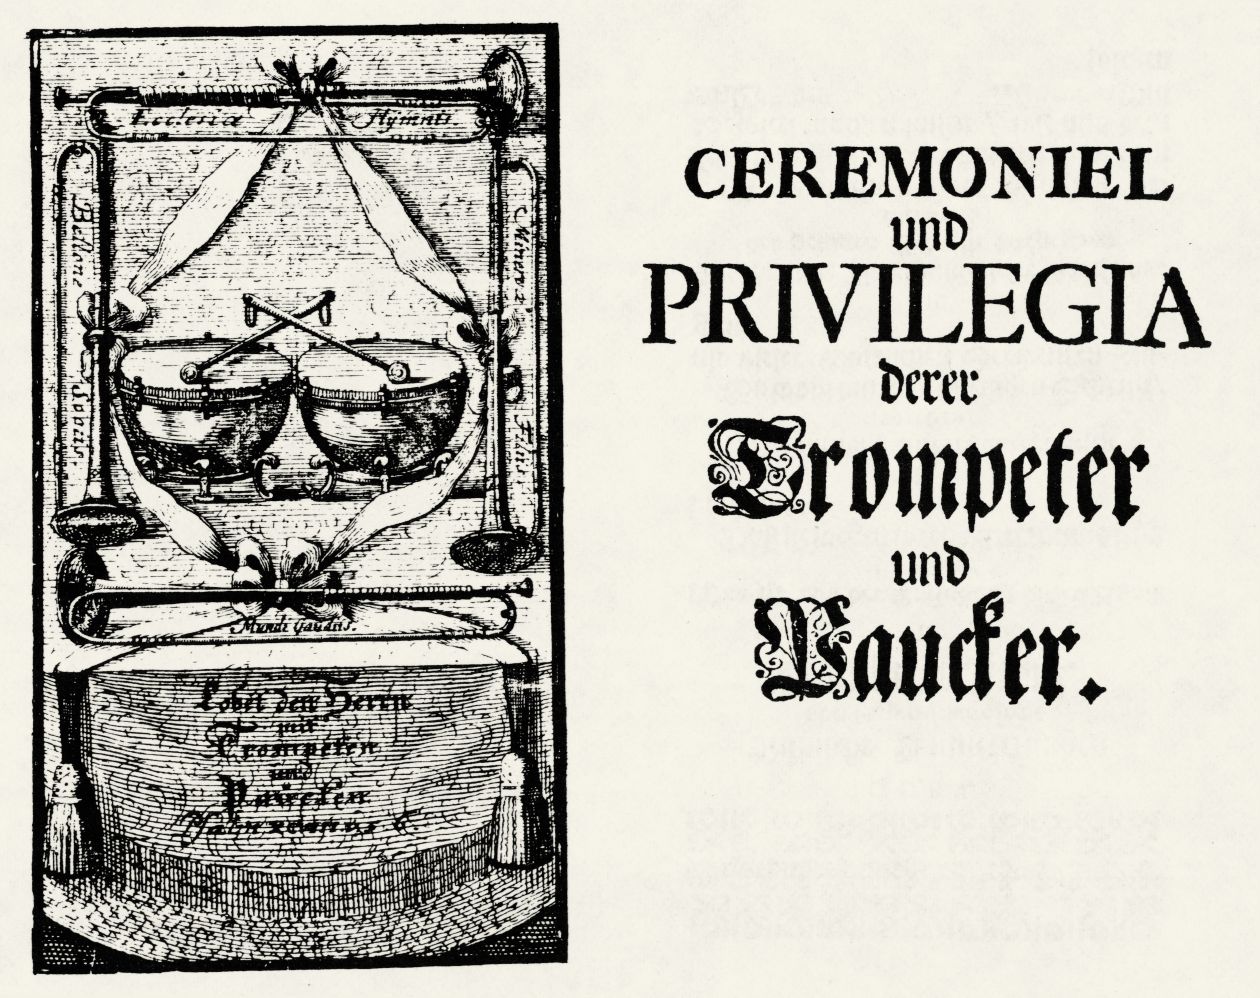 Abbildung Friedrich Friese, Ceremoniel und Privilegia derer Trompeter und Paucker